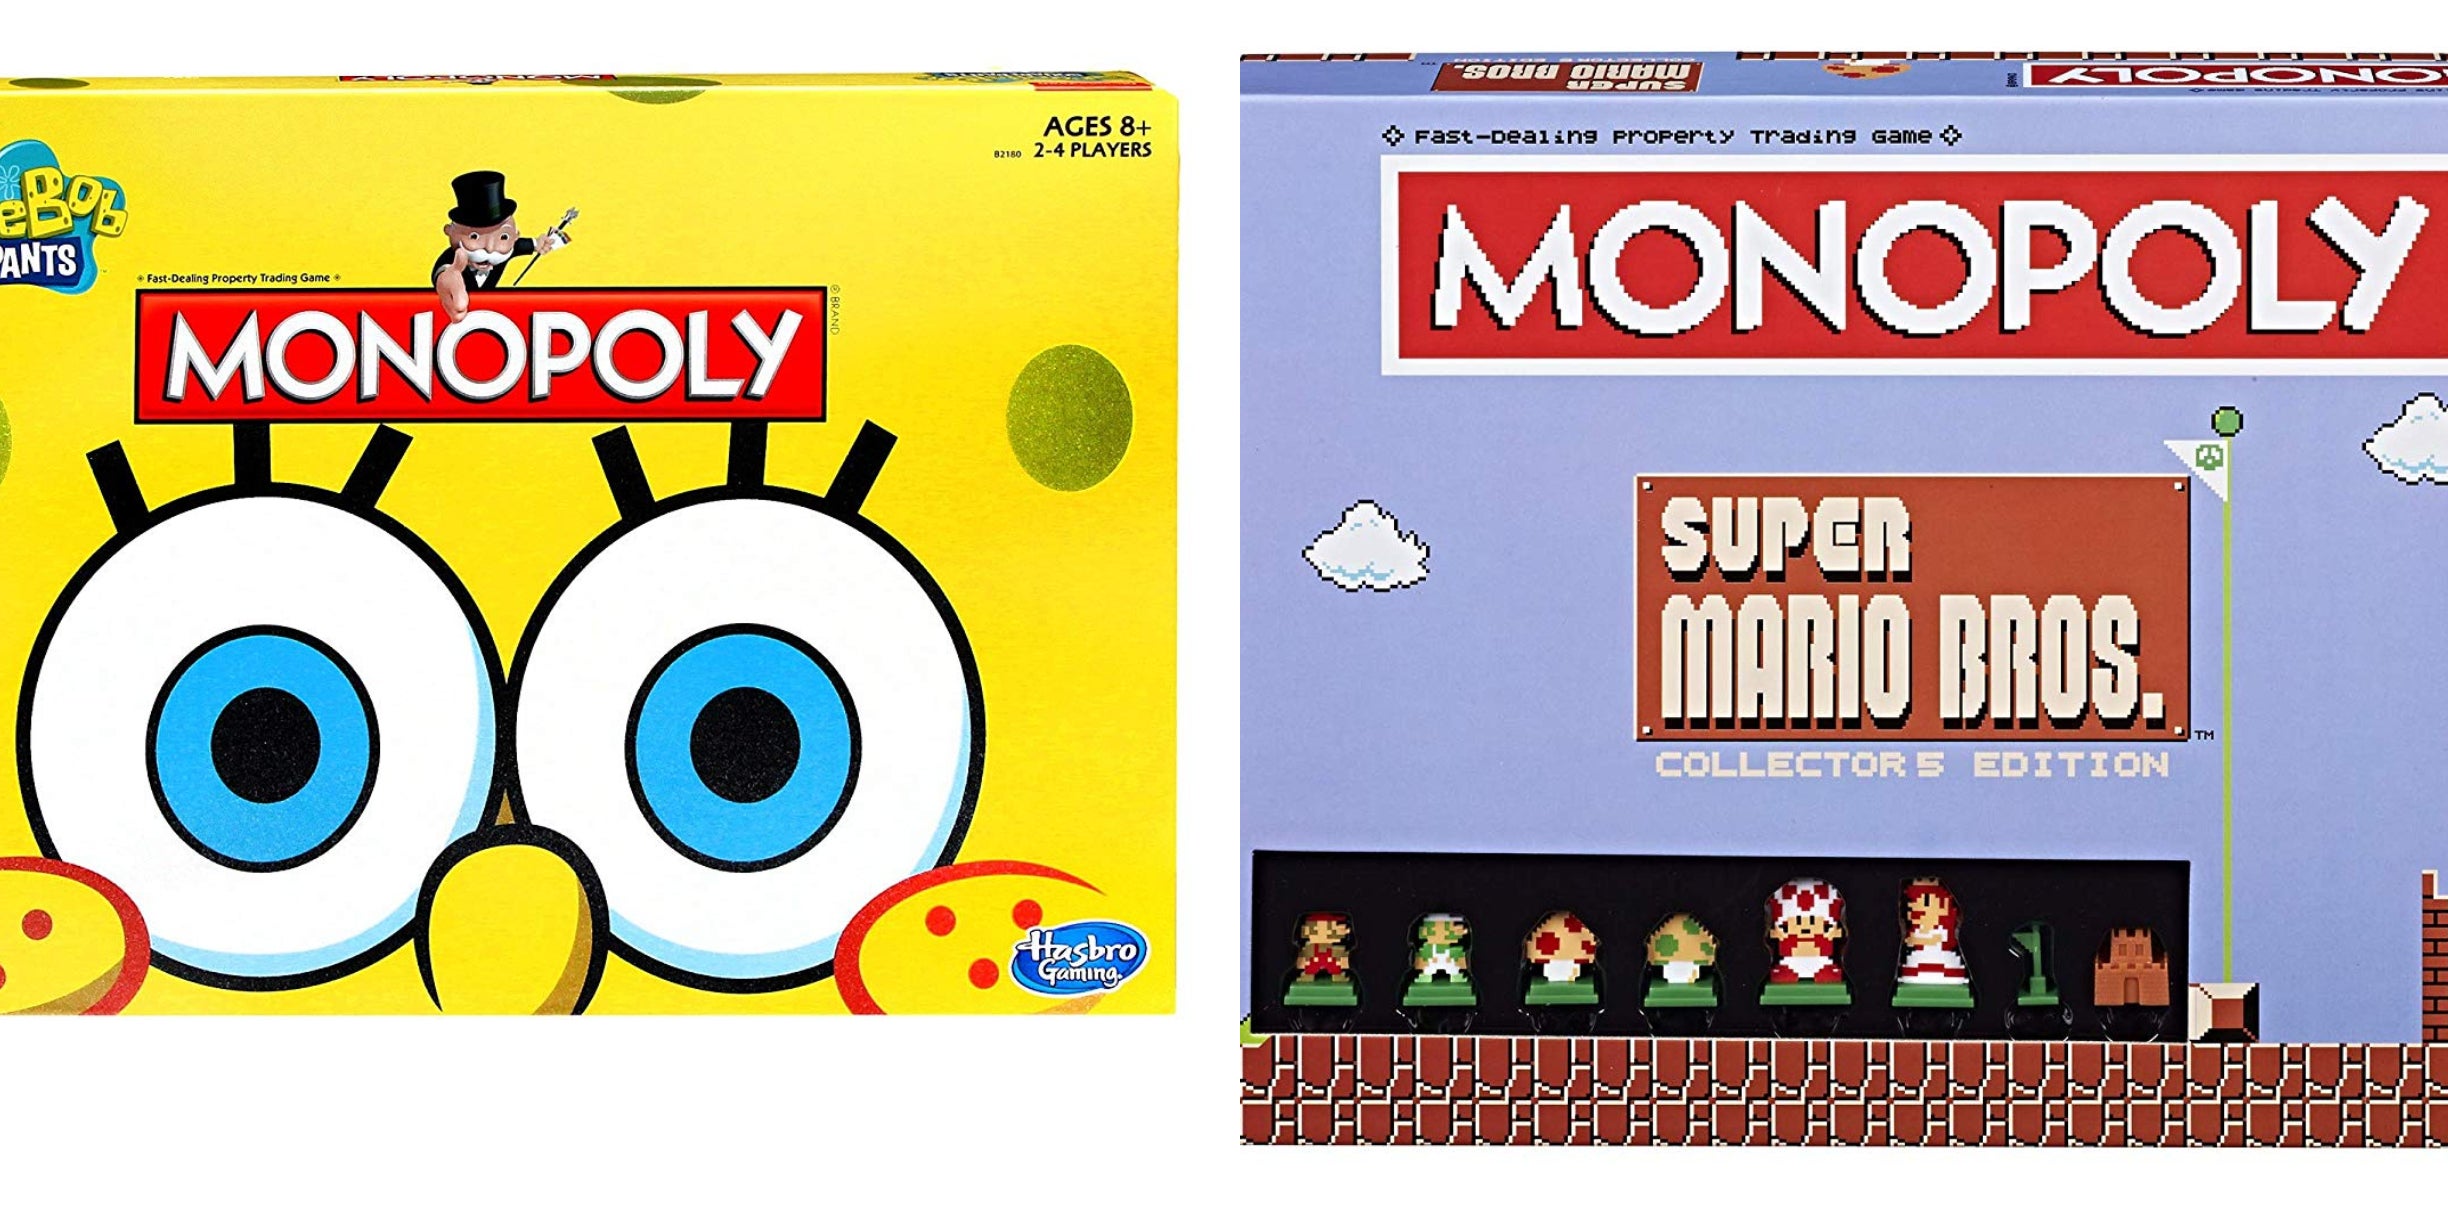 Monopoly: Super Mario Bros. Collector's Edition